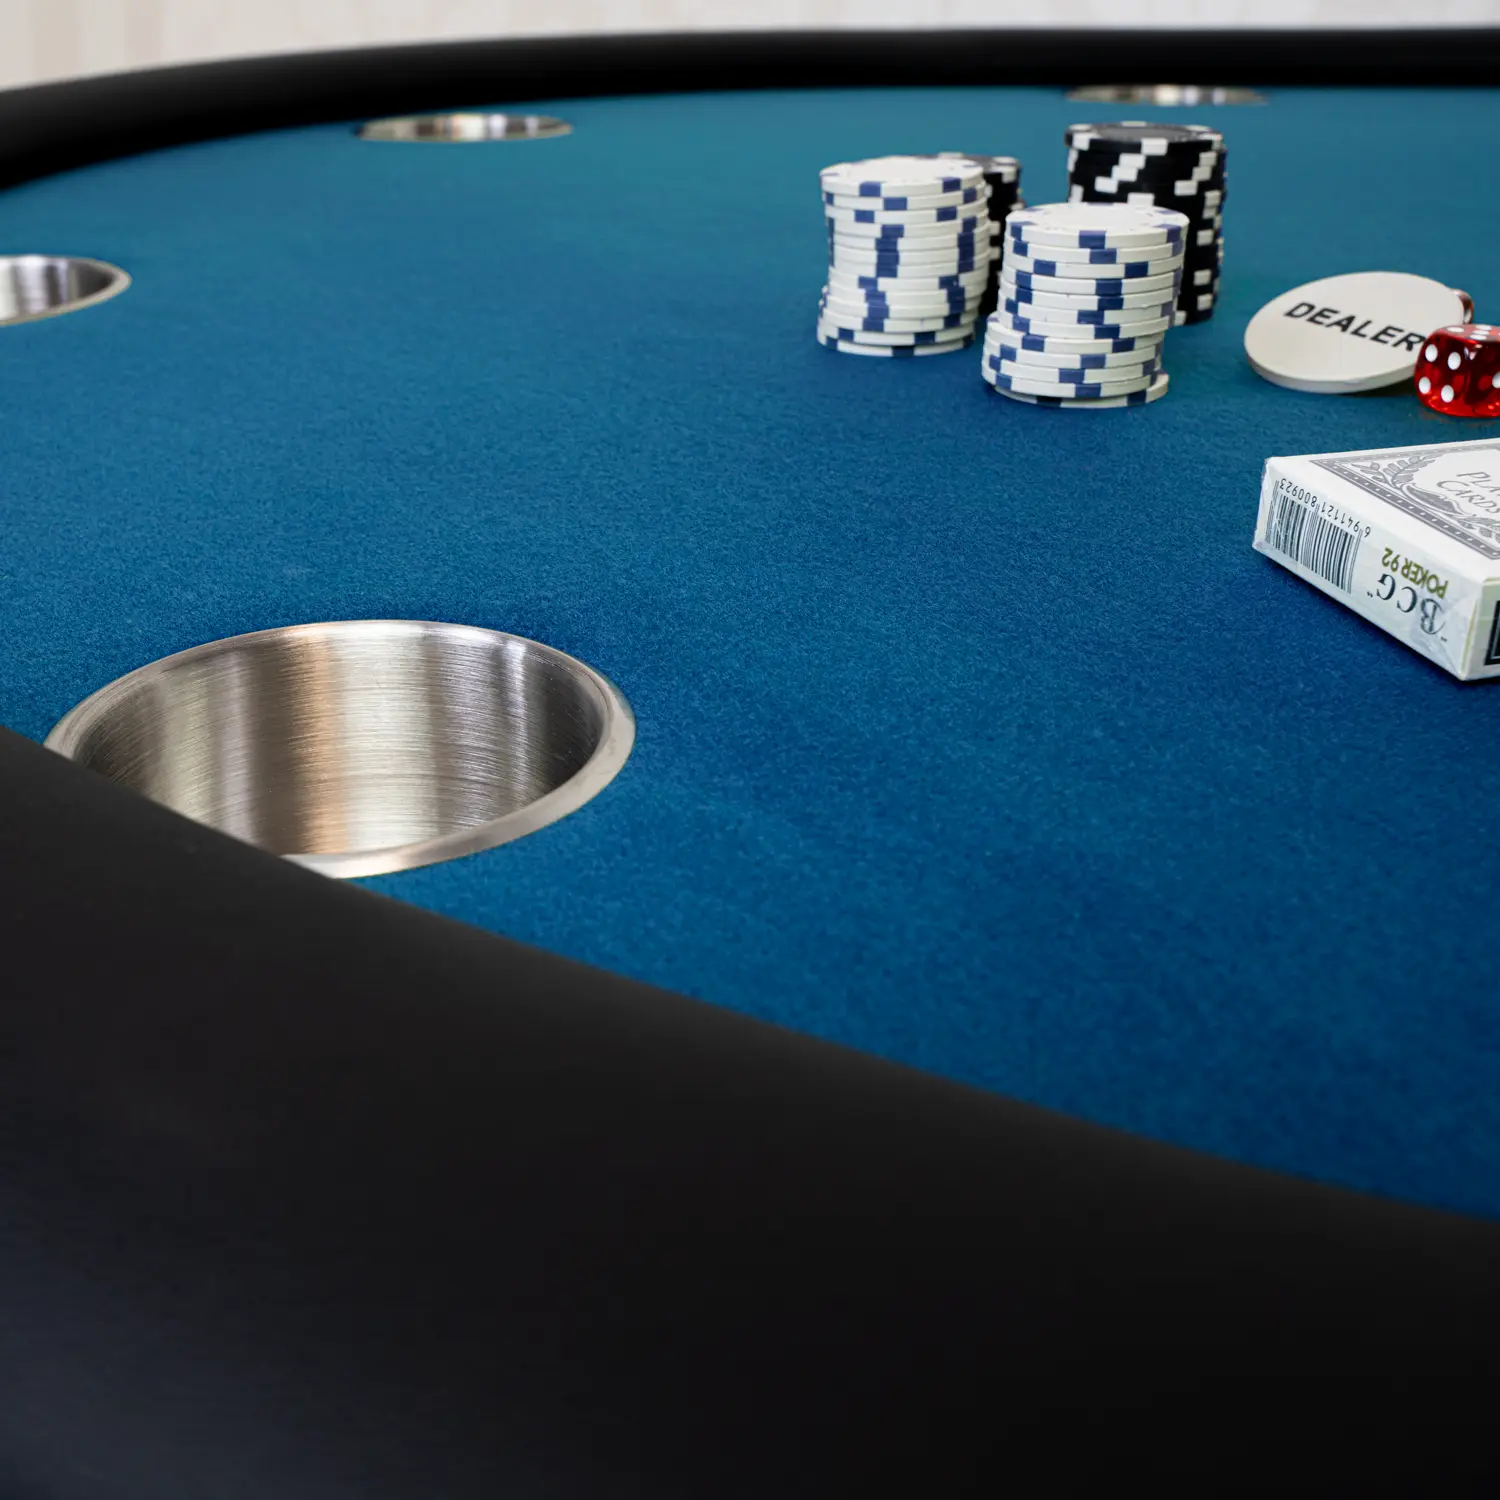 Pókerasztal 8 személyes 132cm kék színben, kör alakú (PKTR52-BLUE)